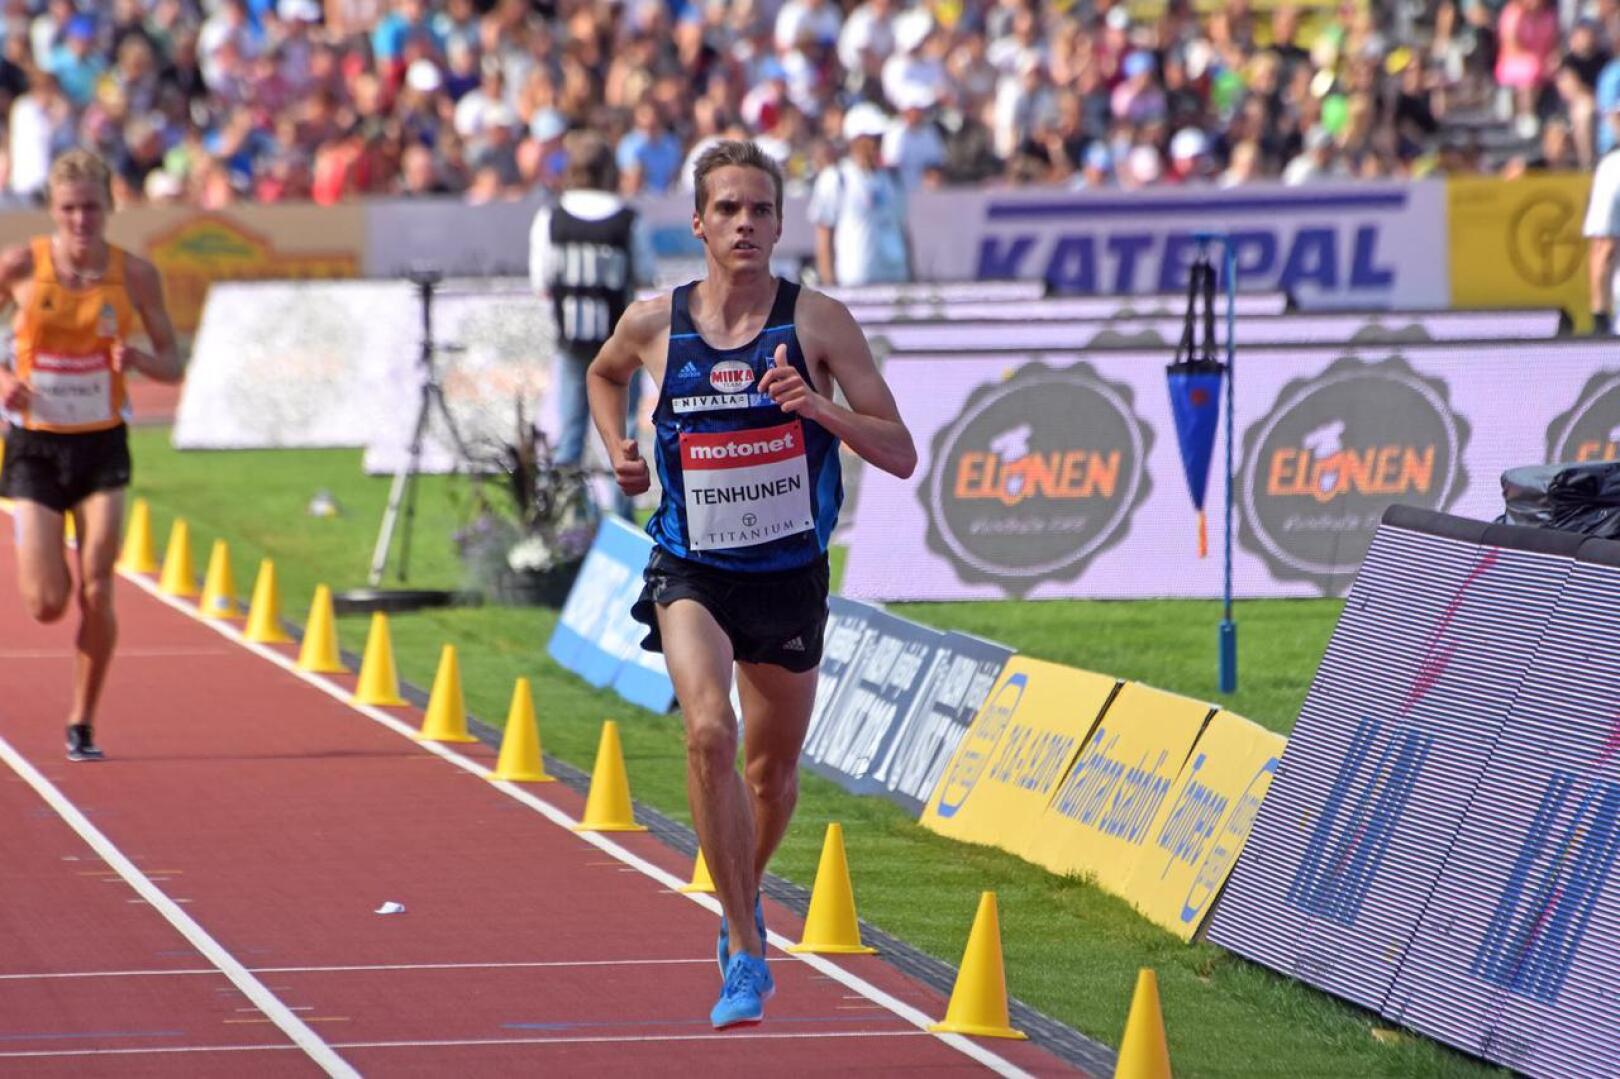 Kalevan kisojen 3000 metrin esteissä ensimmäisen aikuisten sarjan SM-mitalinsa juossut Miika Tenhunen oli yksi Nivalan menestysurheilijoista.